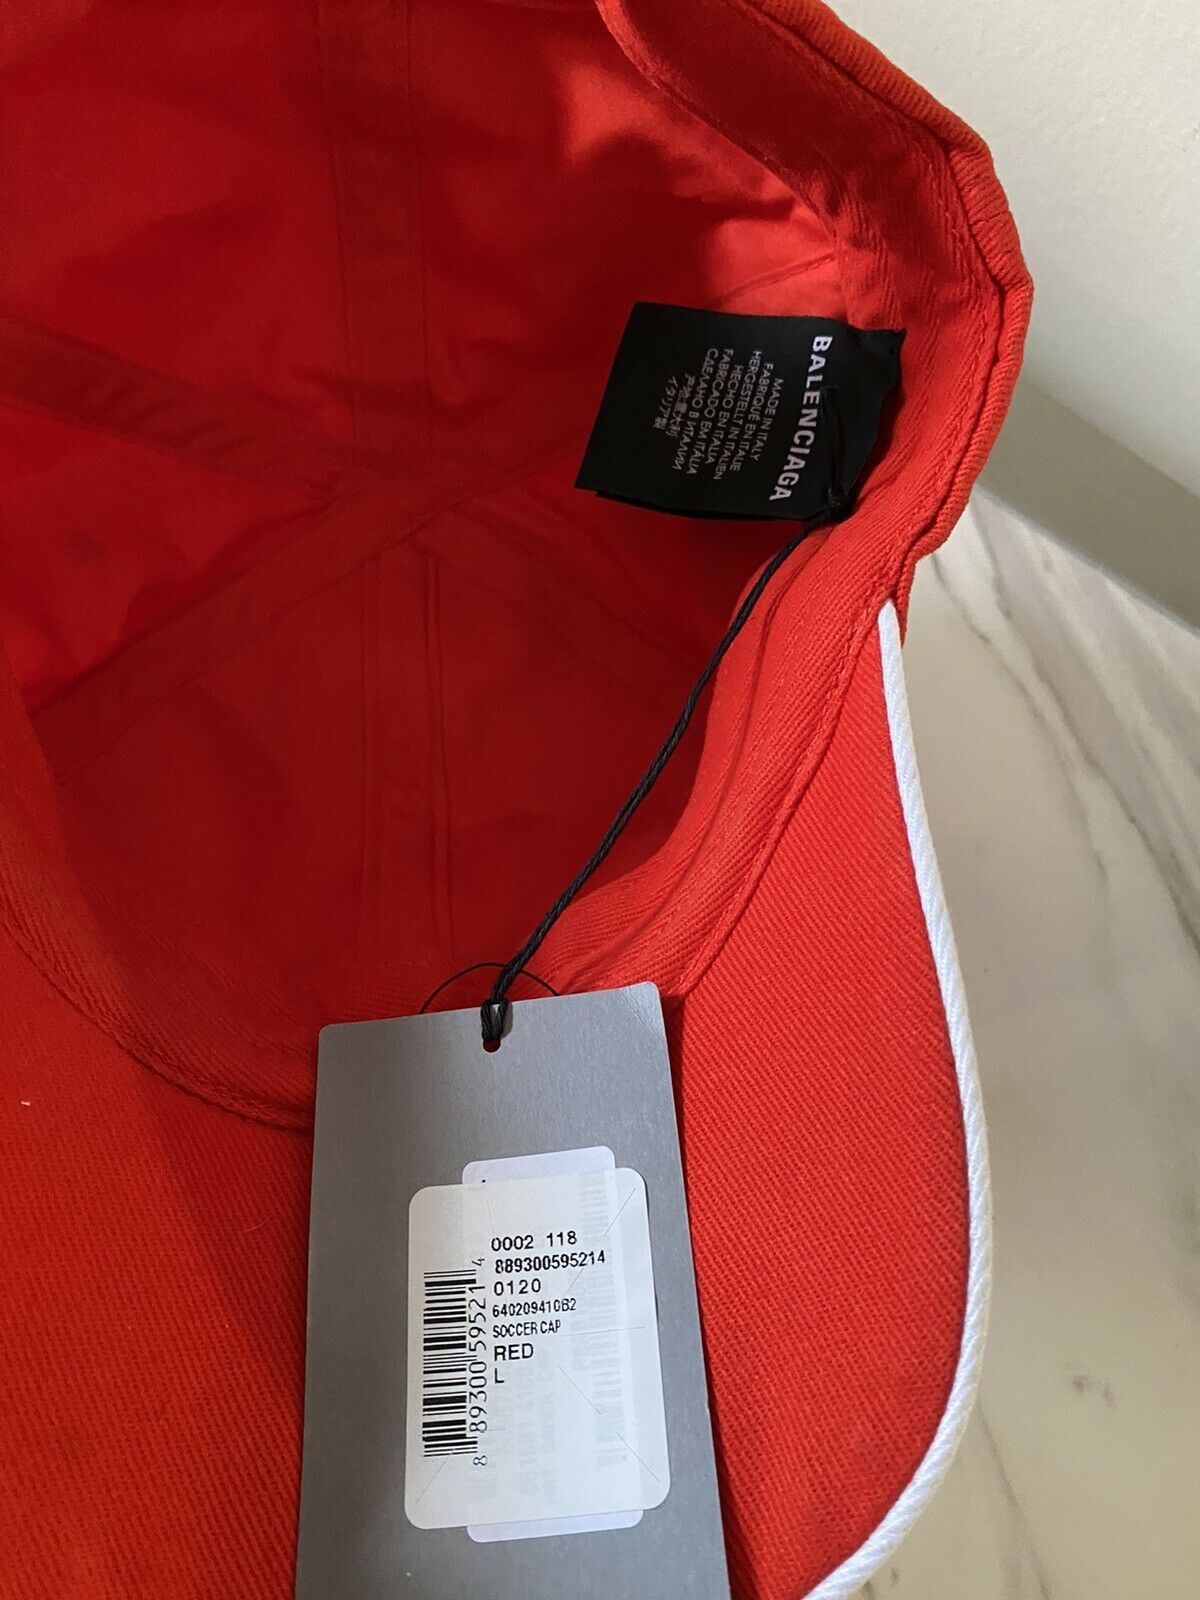 Neu mit Etikett: Balenciaga Herren-Trucker-Mütze, Rot, Größe L, Italien